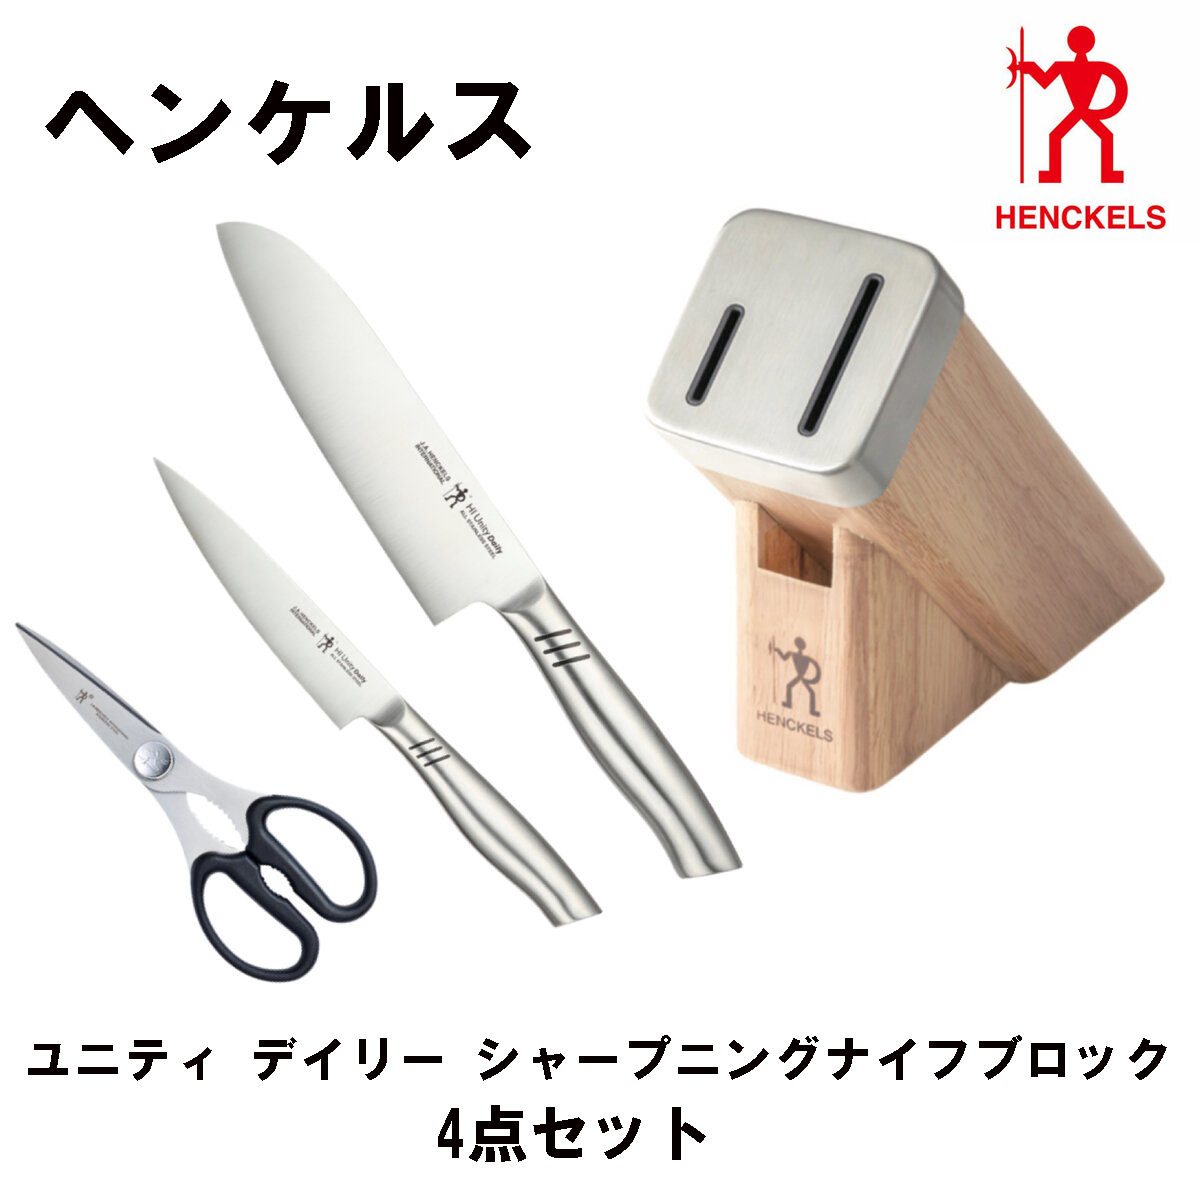 アウトレット限定商品 【送料無料】ツヴィリング ナイフ 白5セット ブロック 調理器具